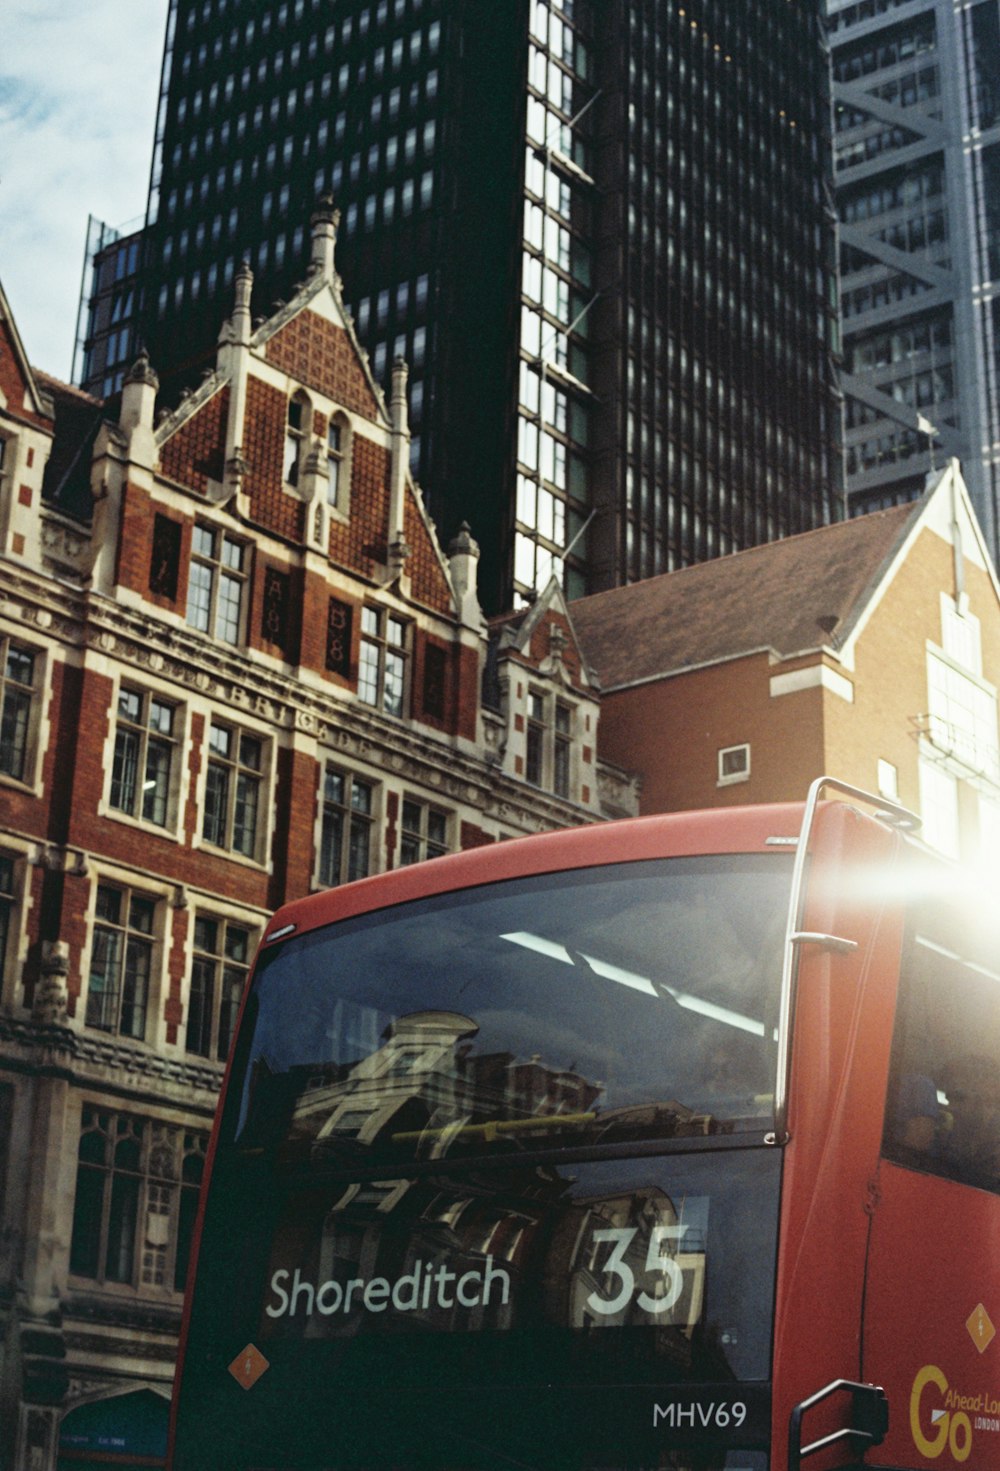 Un autobús rojo circulando por una calle junto a edificios altos